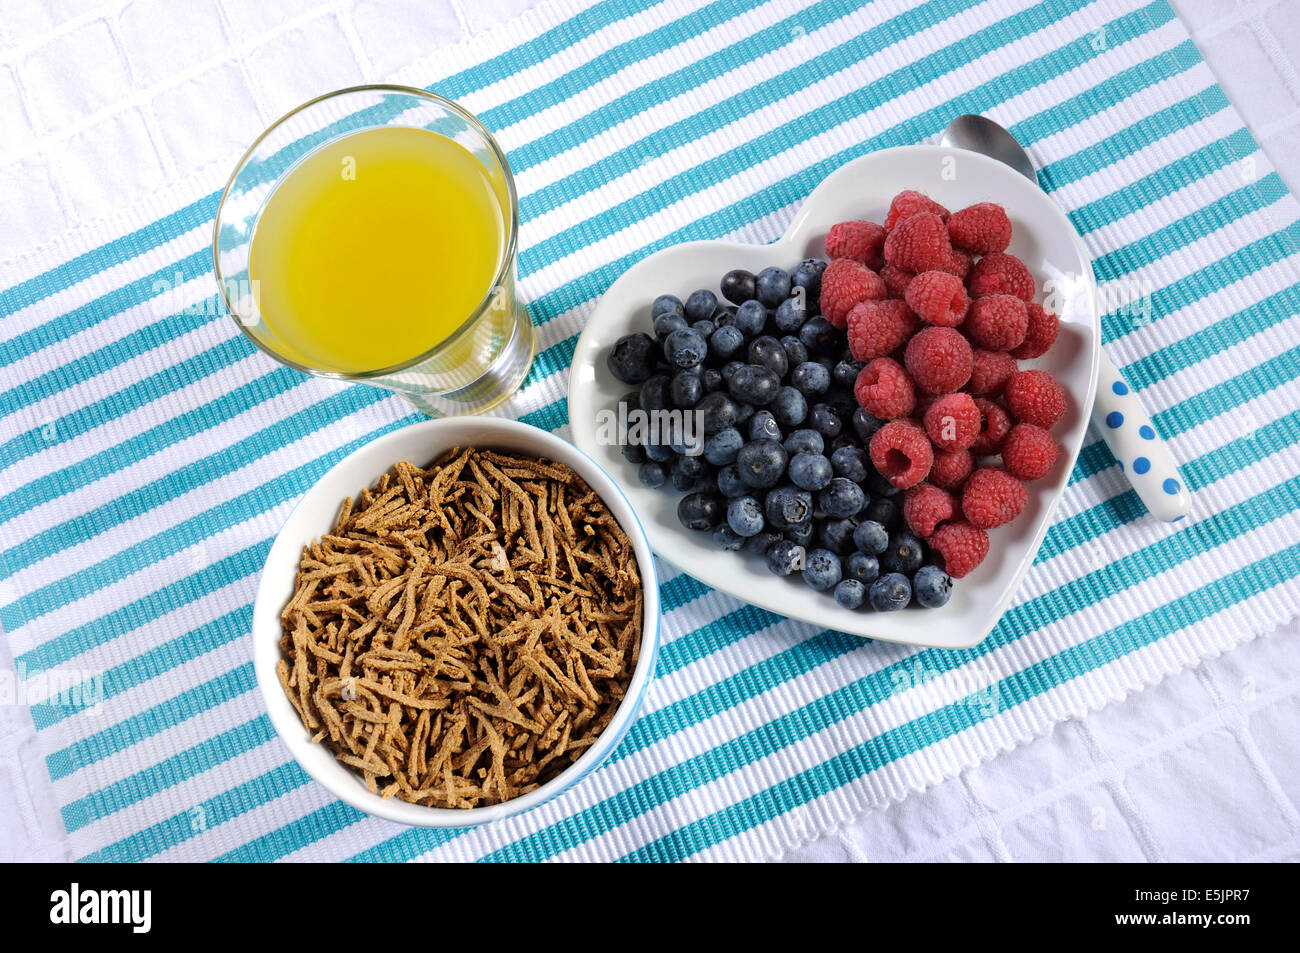 Dieta saludable Una dieta alta en fibra con desayuno tazón de cereal de salvado y bayas de color blanco en la placa del corazón aqua azul con piña Foto de stock